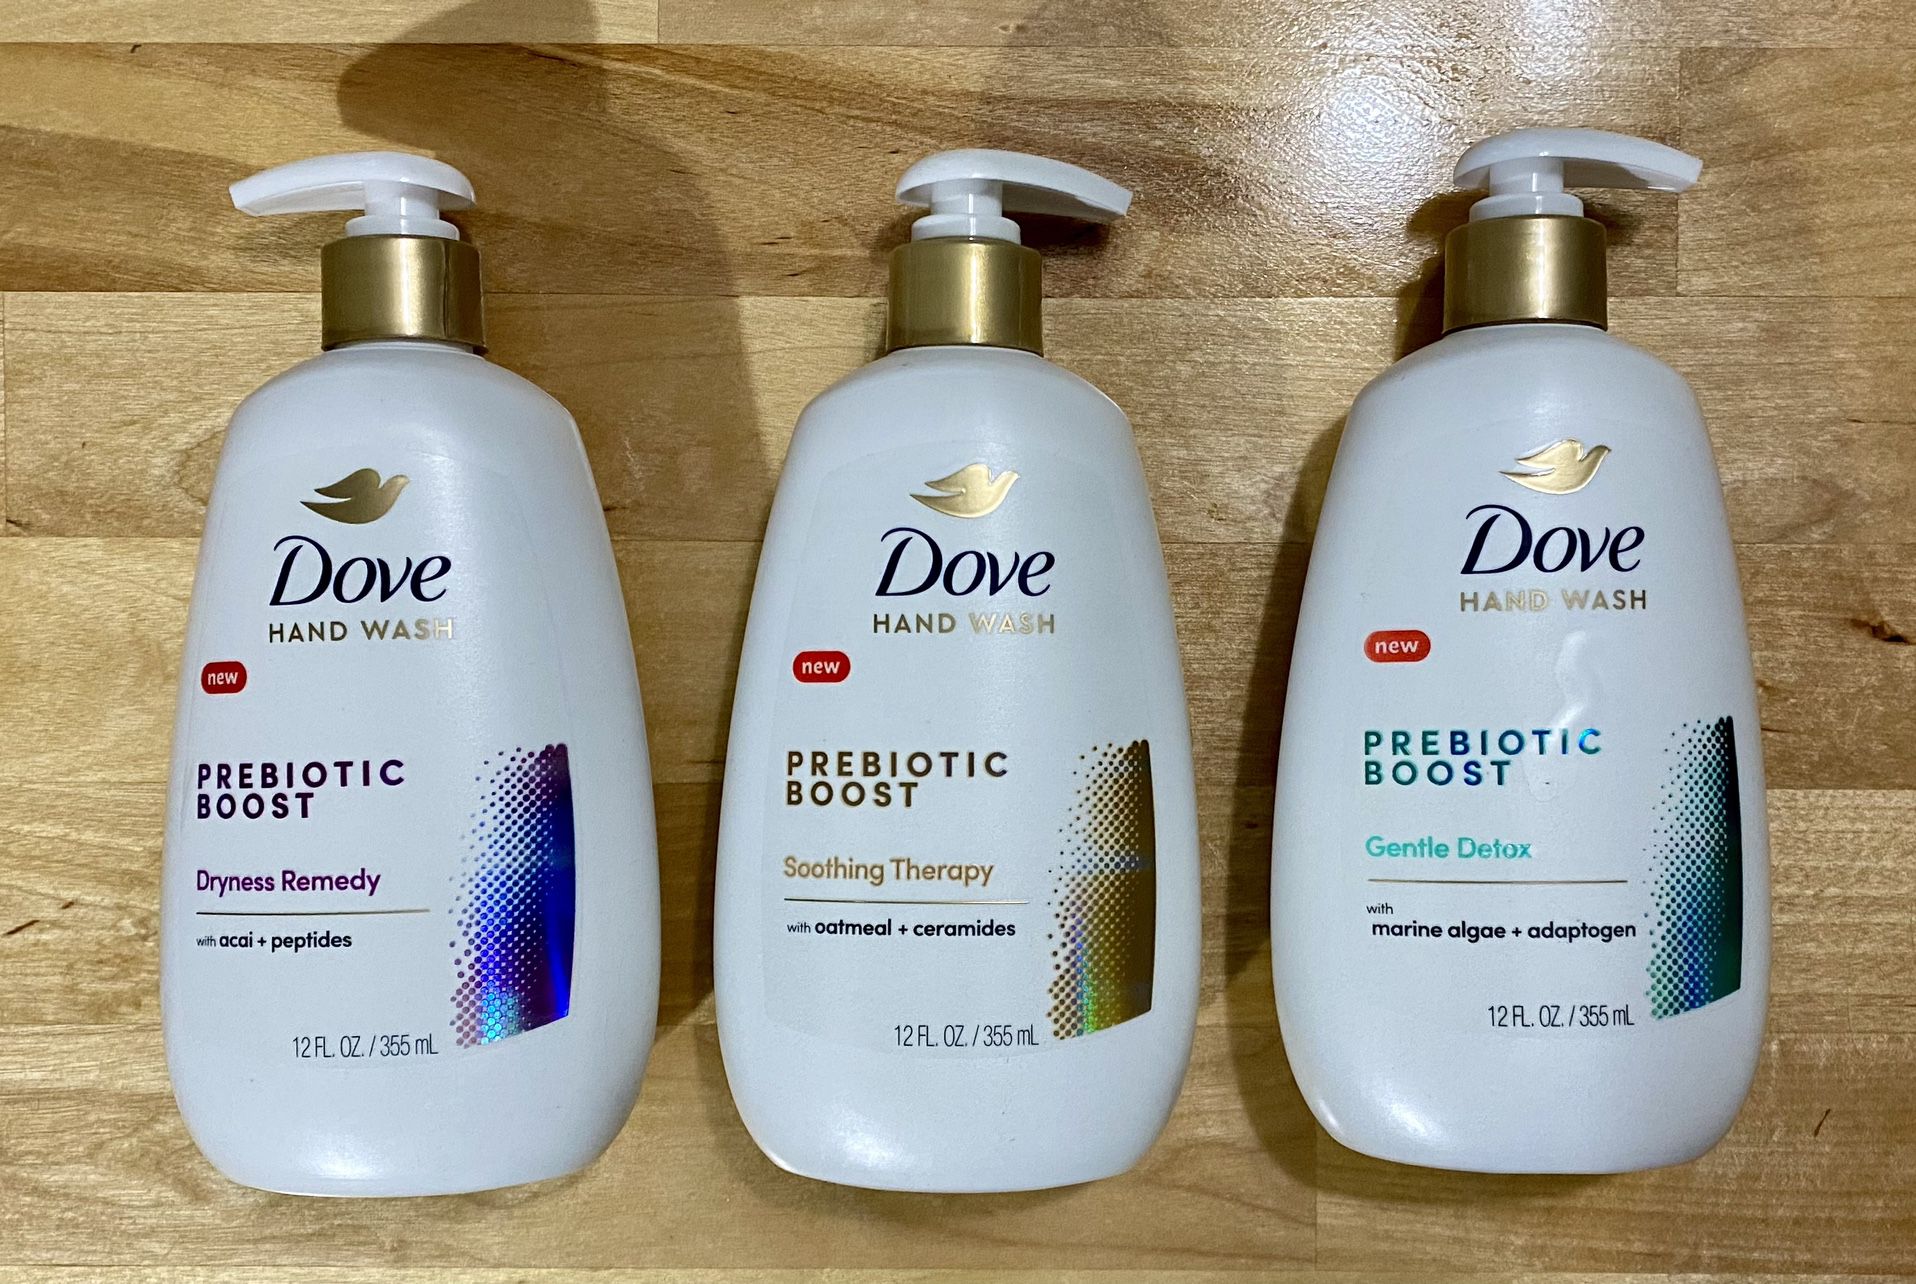 New Dove Prebiotic hand soap